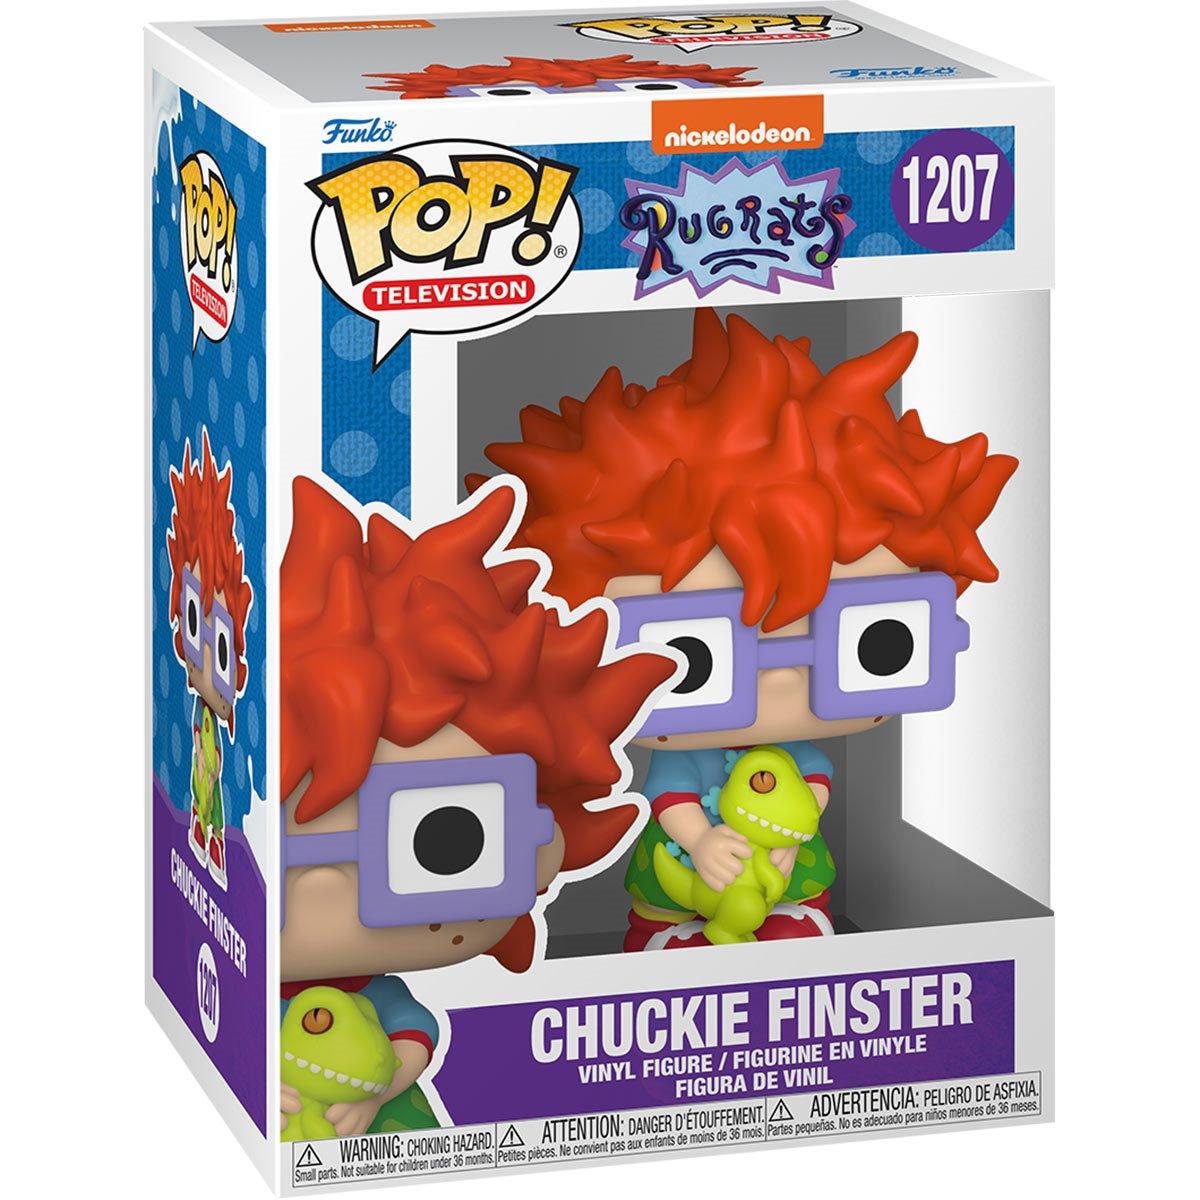 Rugrats Chuckie Finster Pop! Vinyl Figure - D-Pop